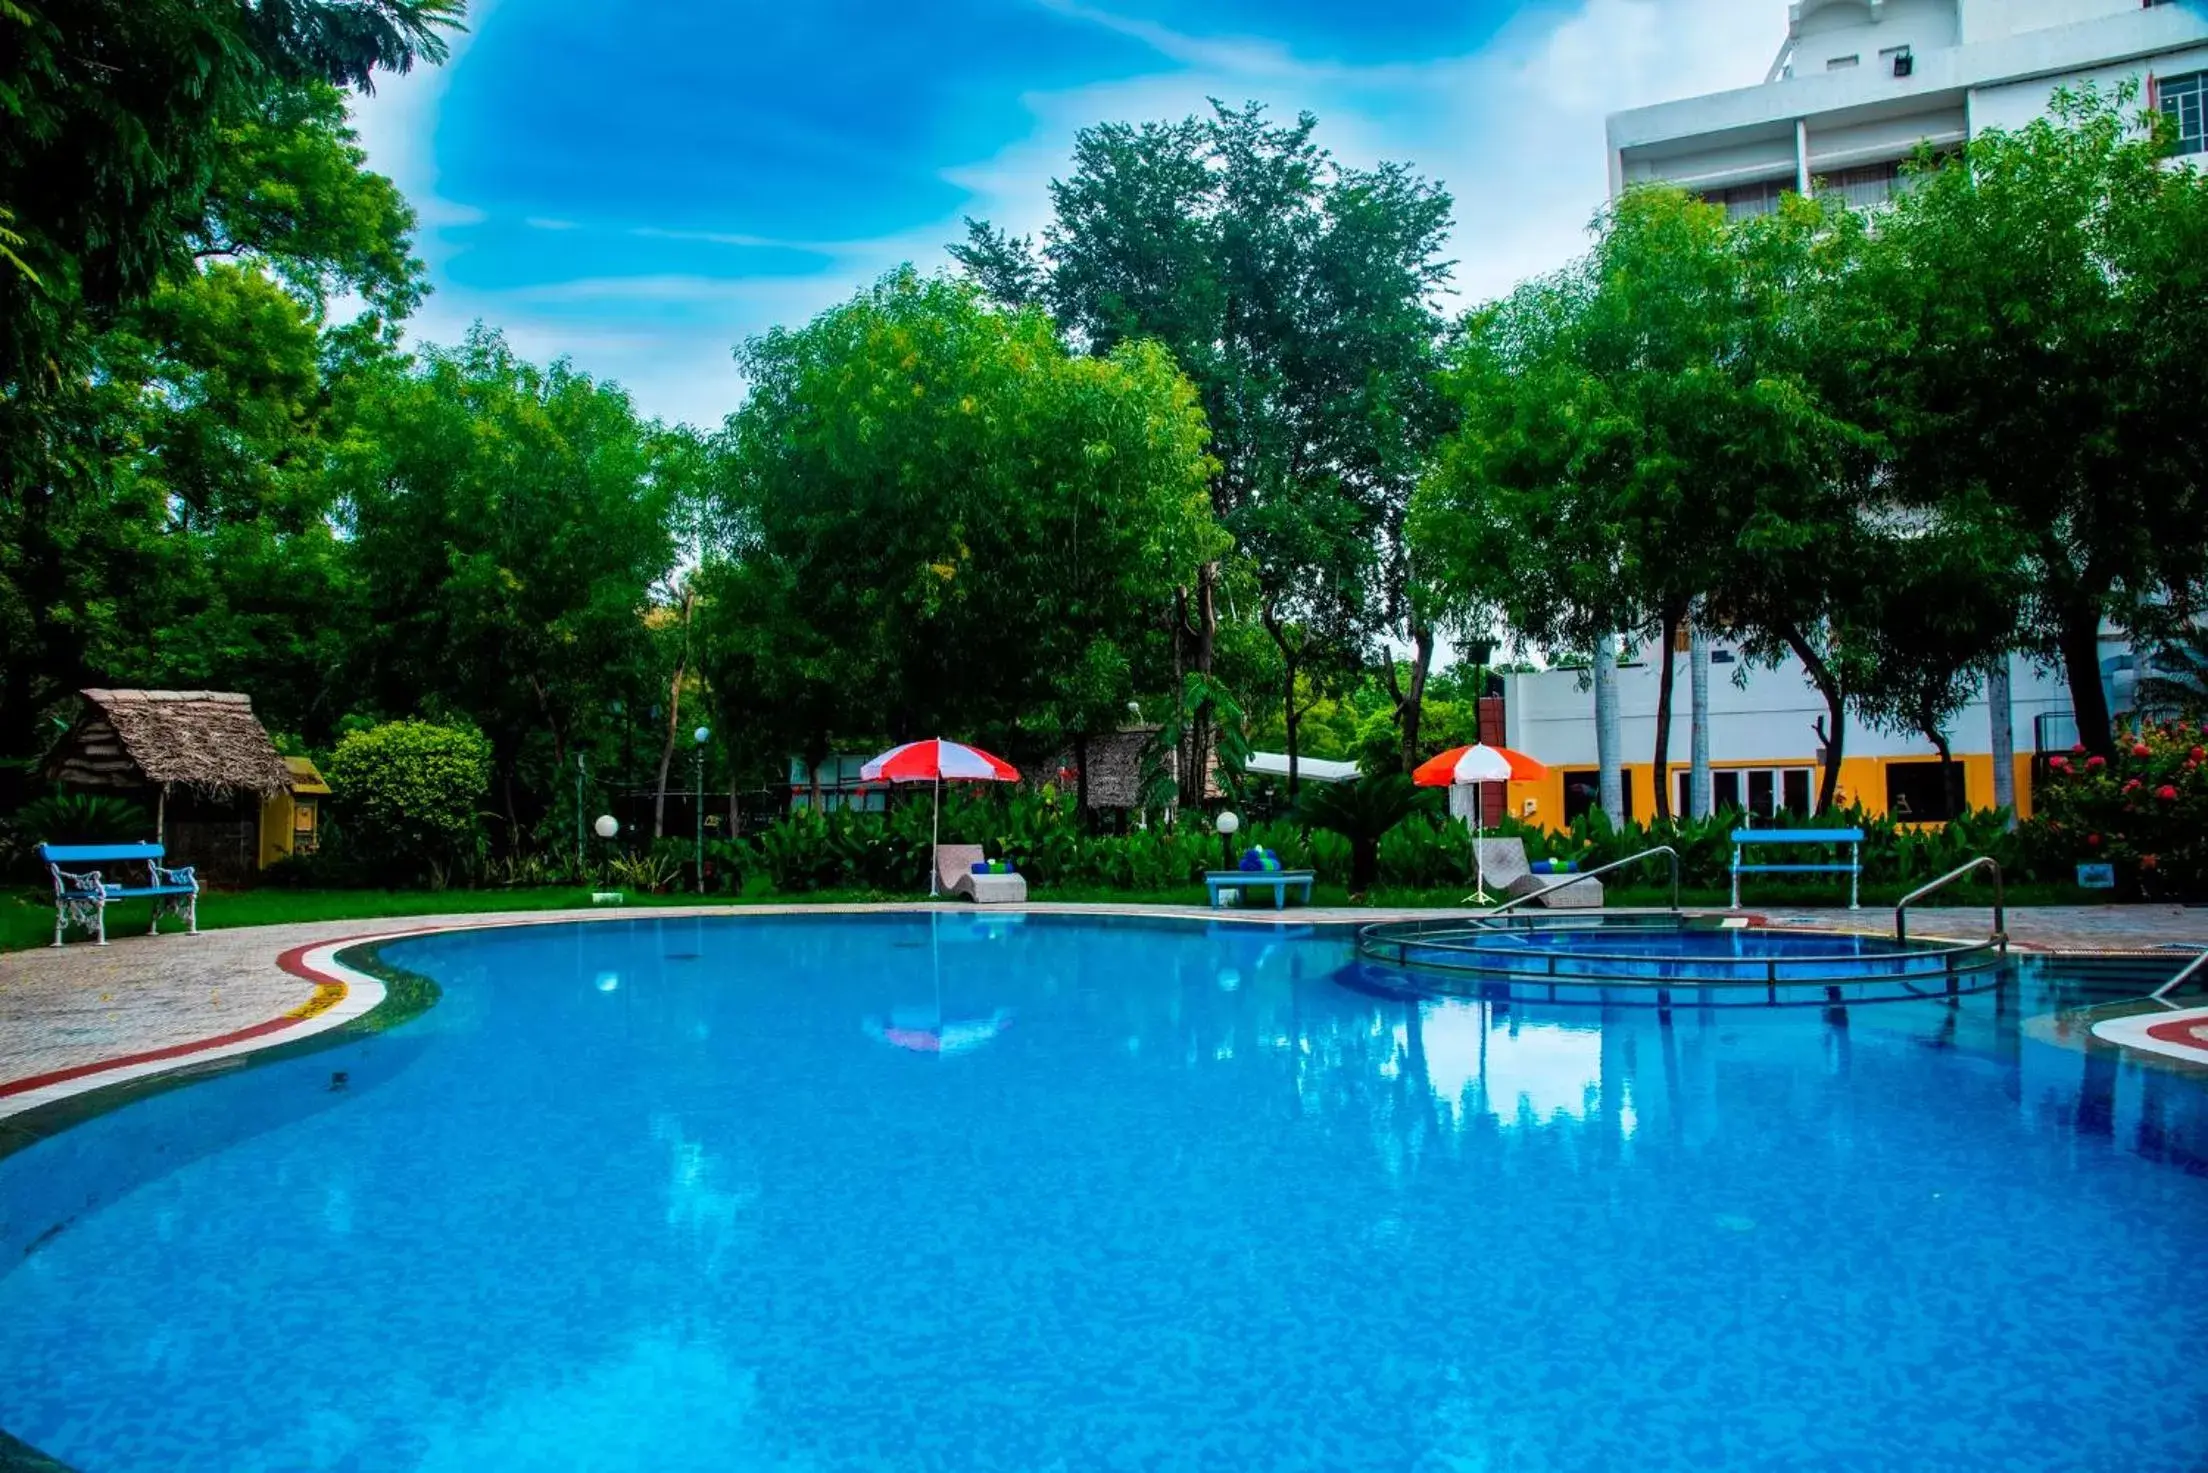 Swimming Pool in Fortune Pandiyan Hotel, Madurai - Member ITC's Hotel Group